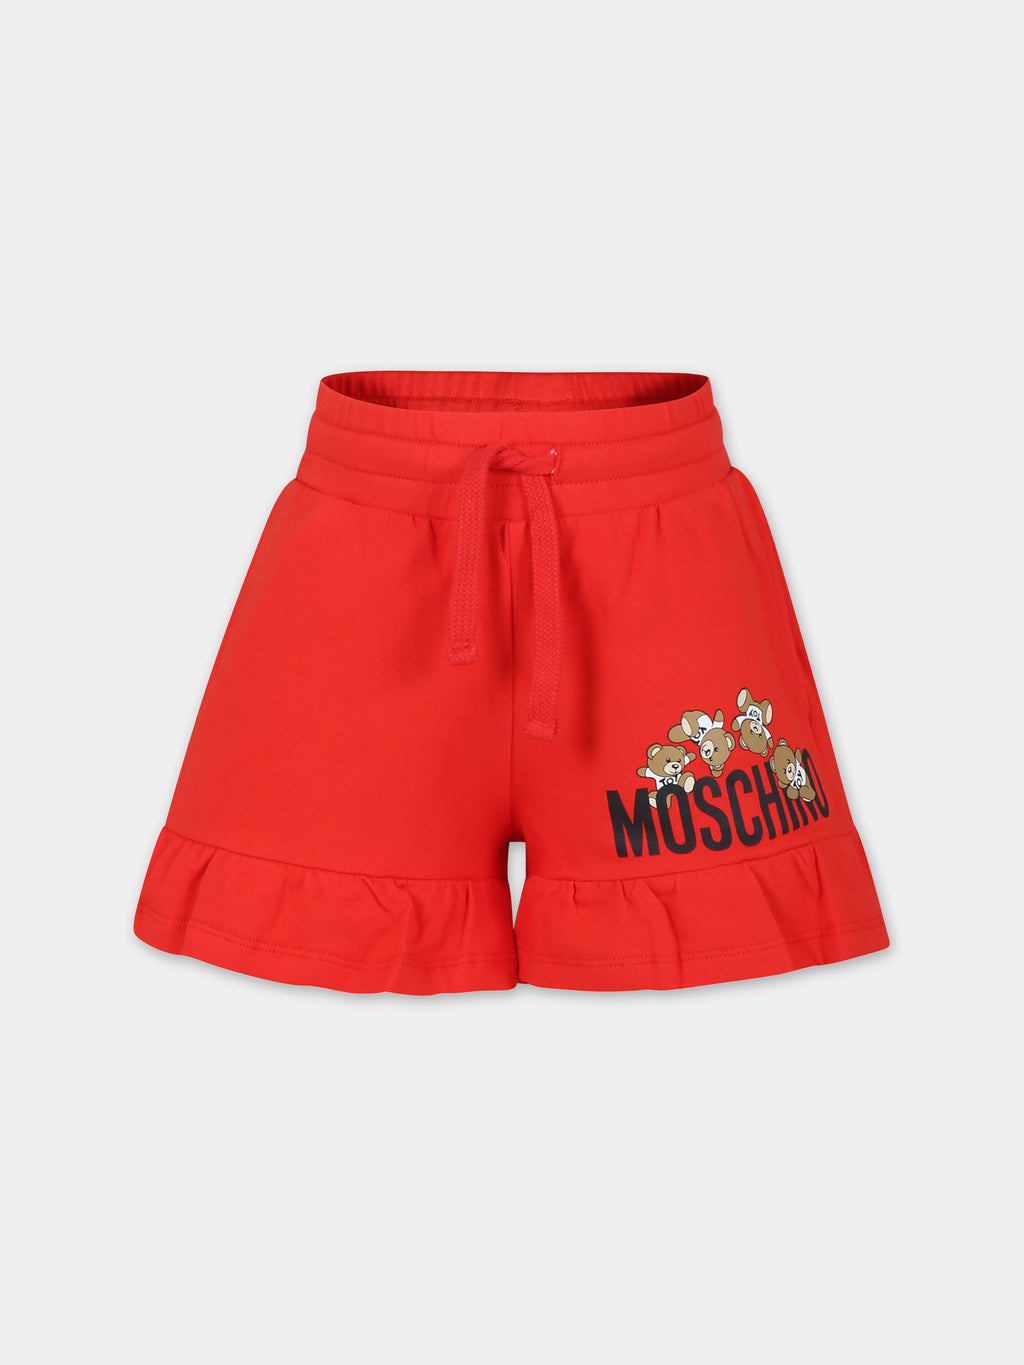 Shorts rossi per bambina con Teddy Bears e logo